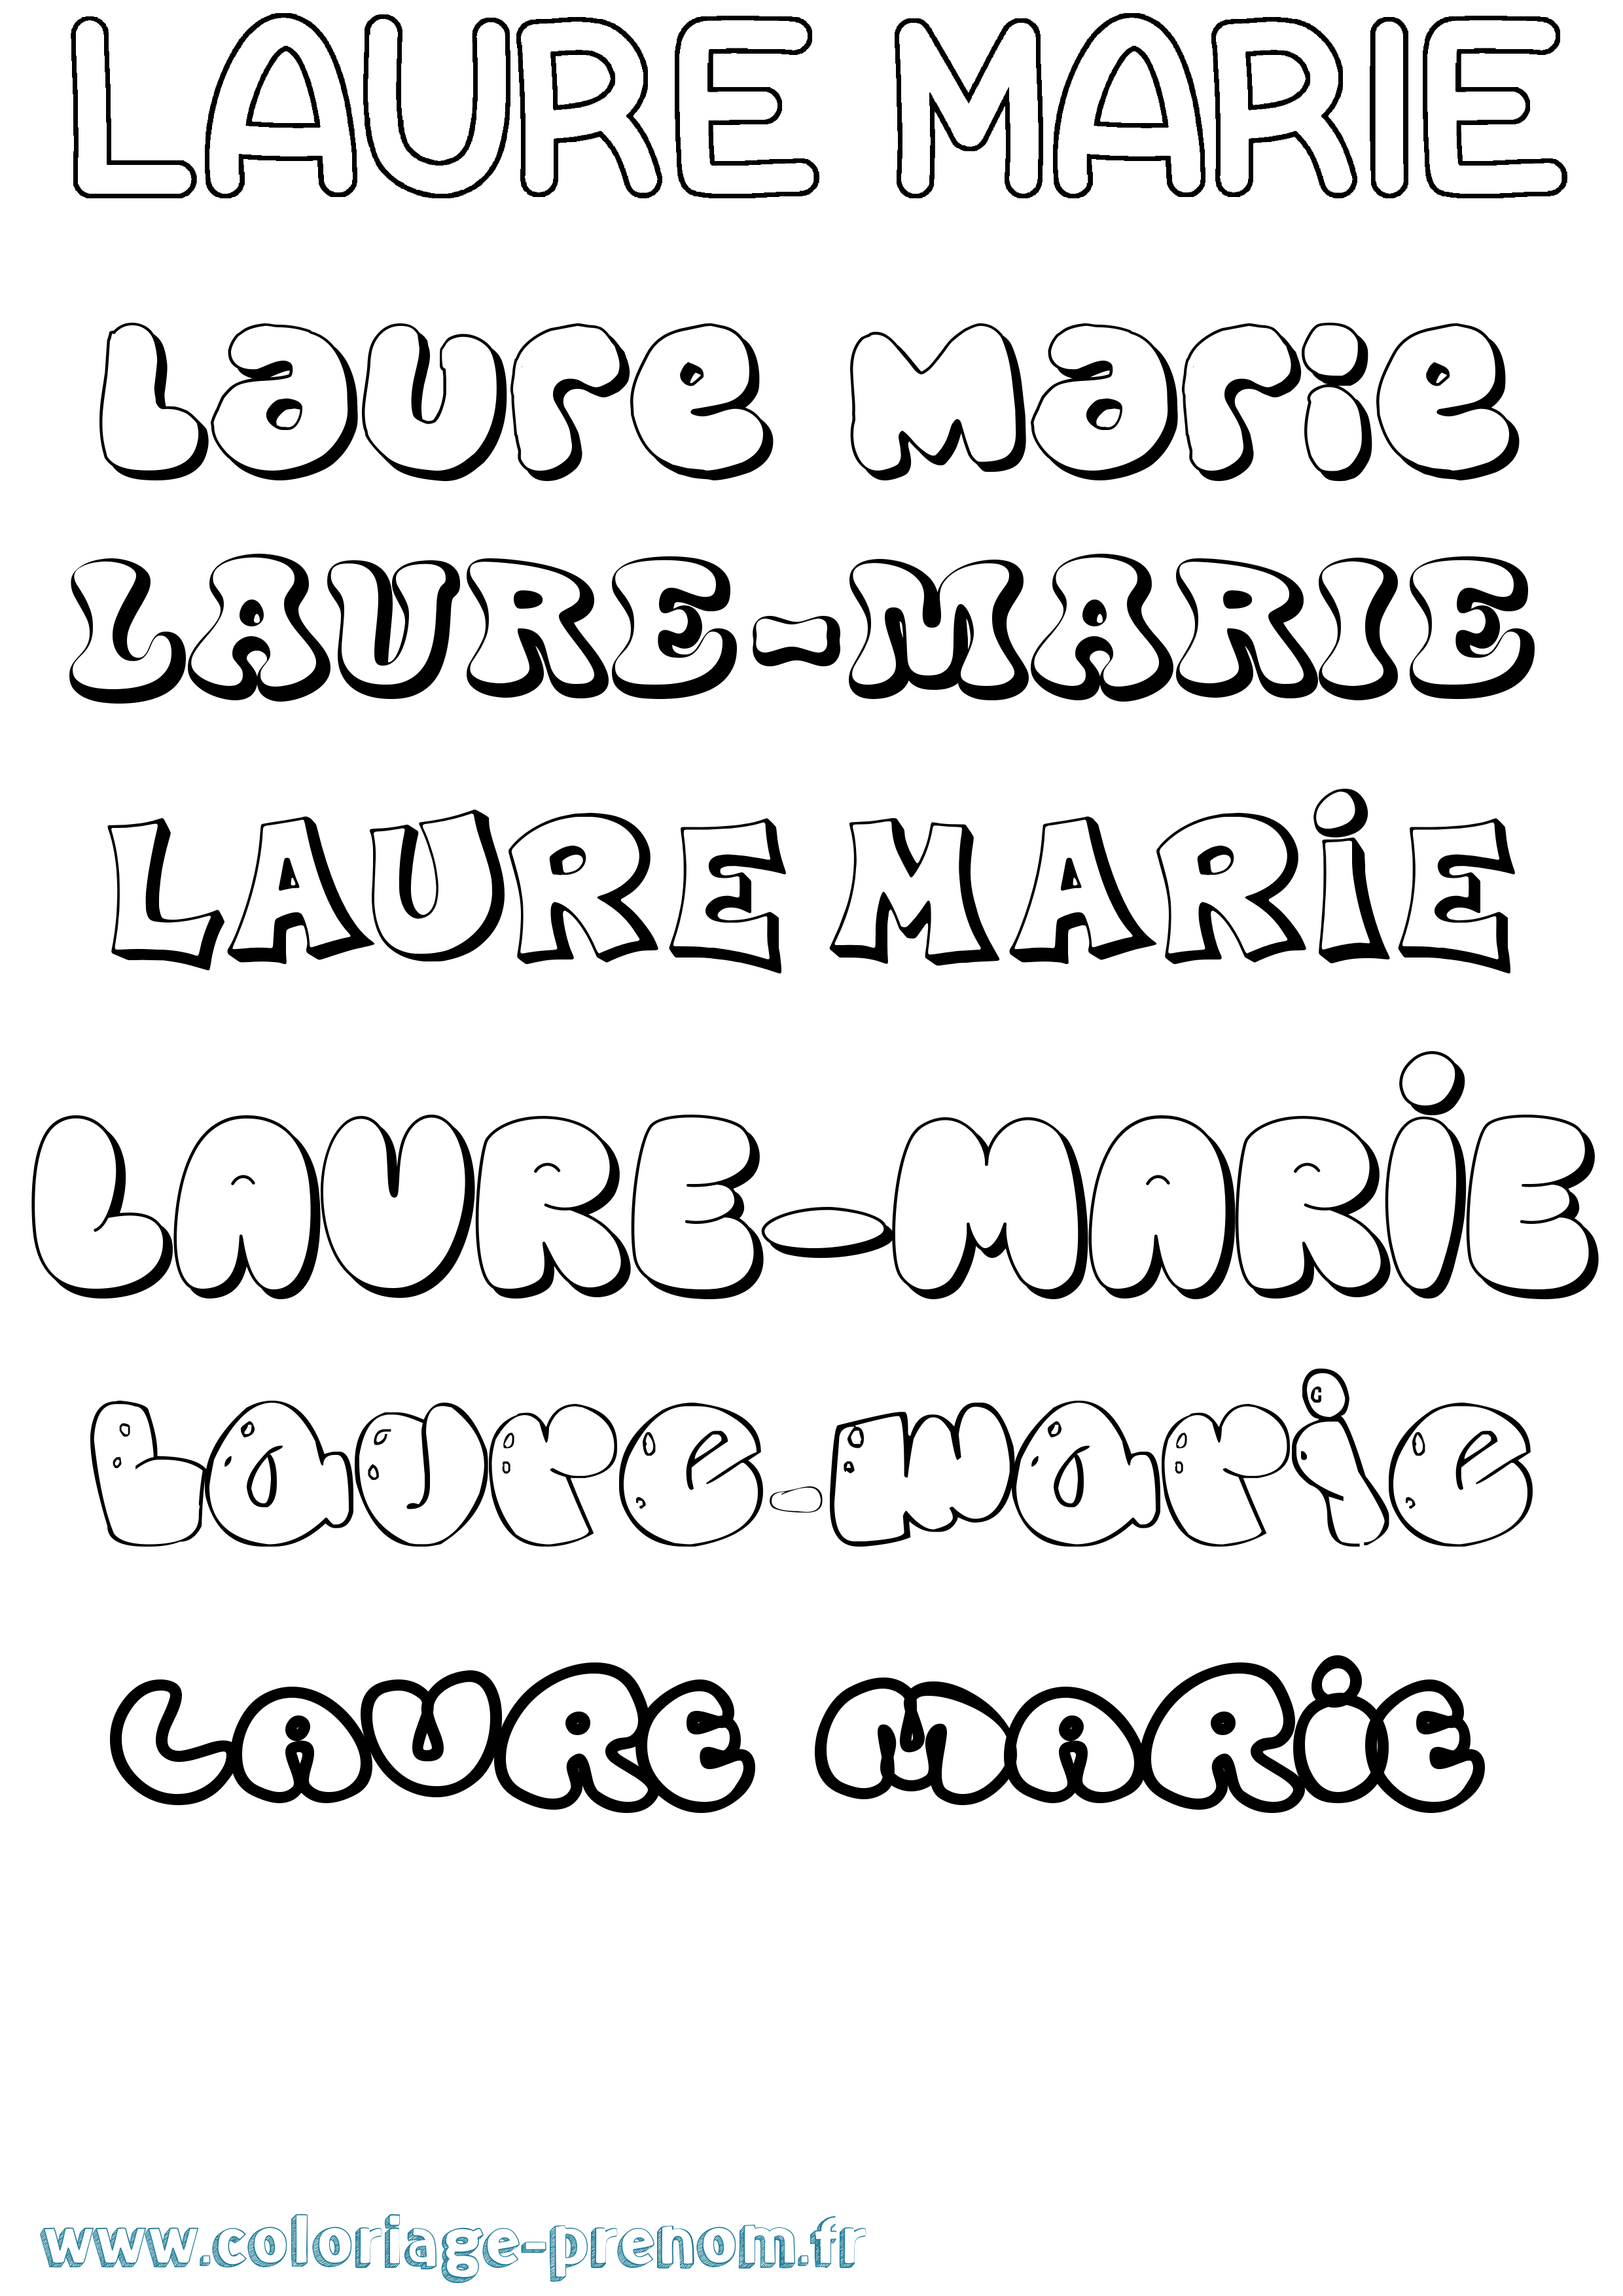 Coloriage prénom Laure-Marie Bubble